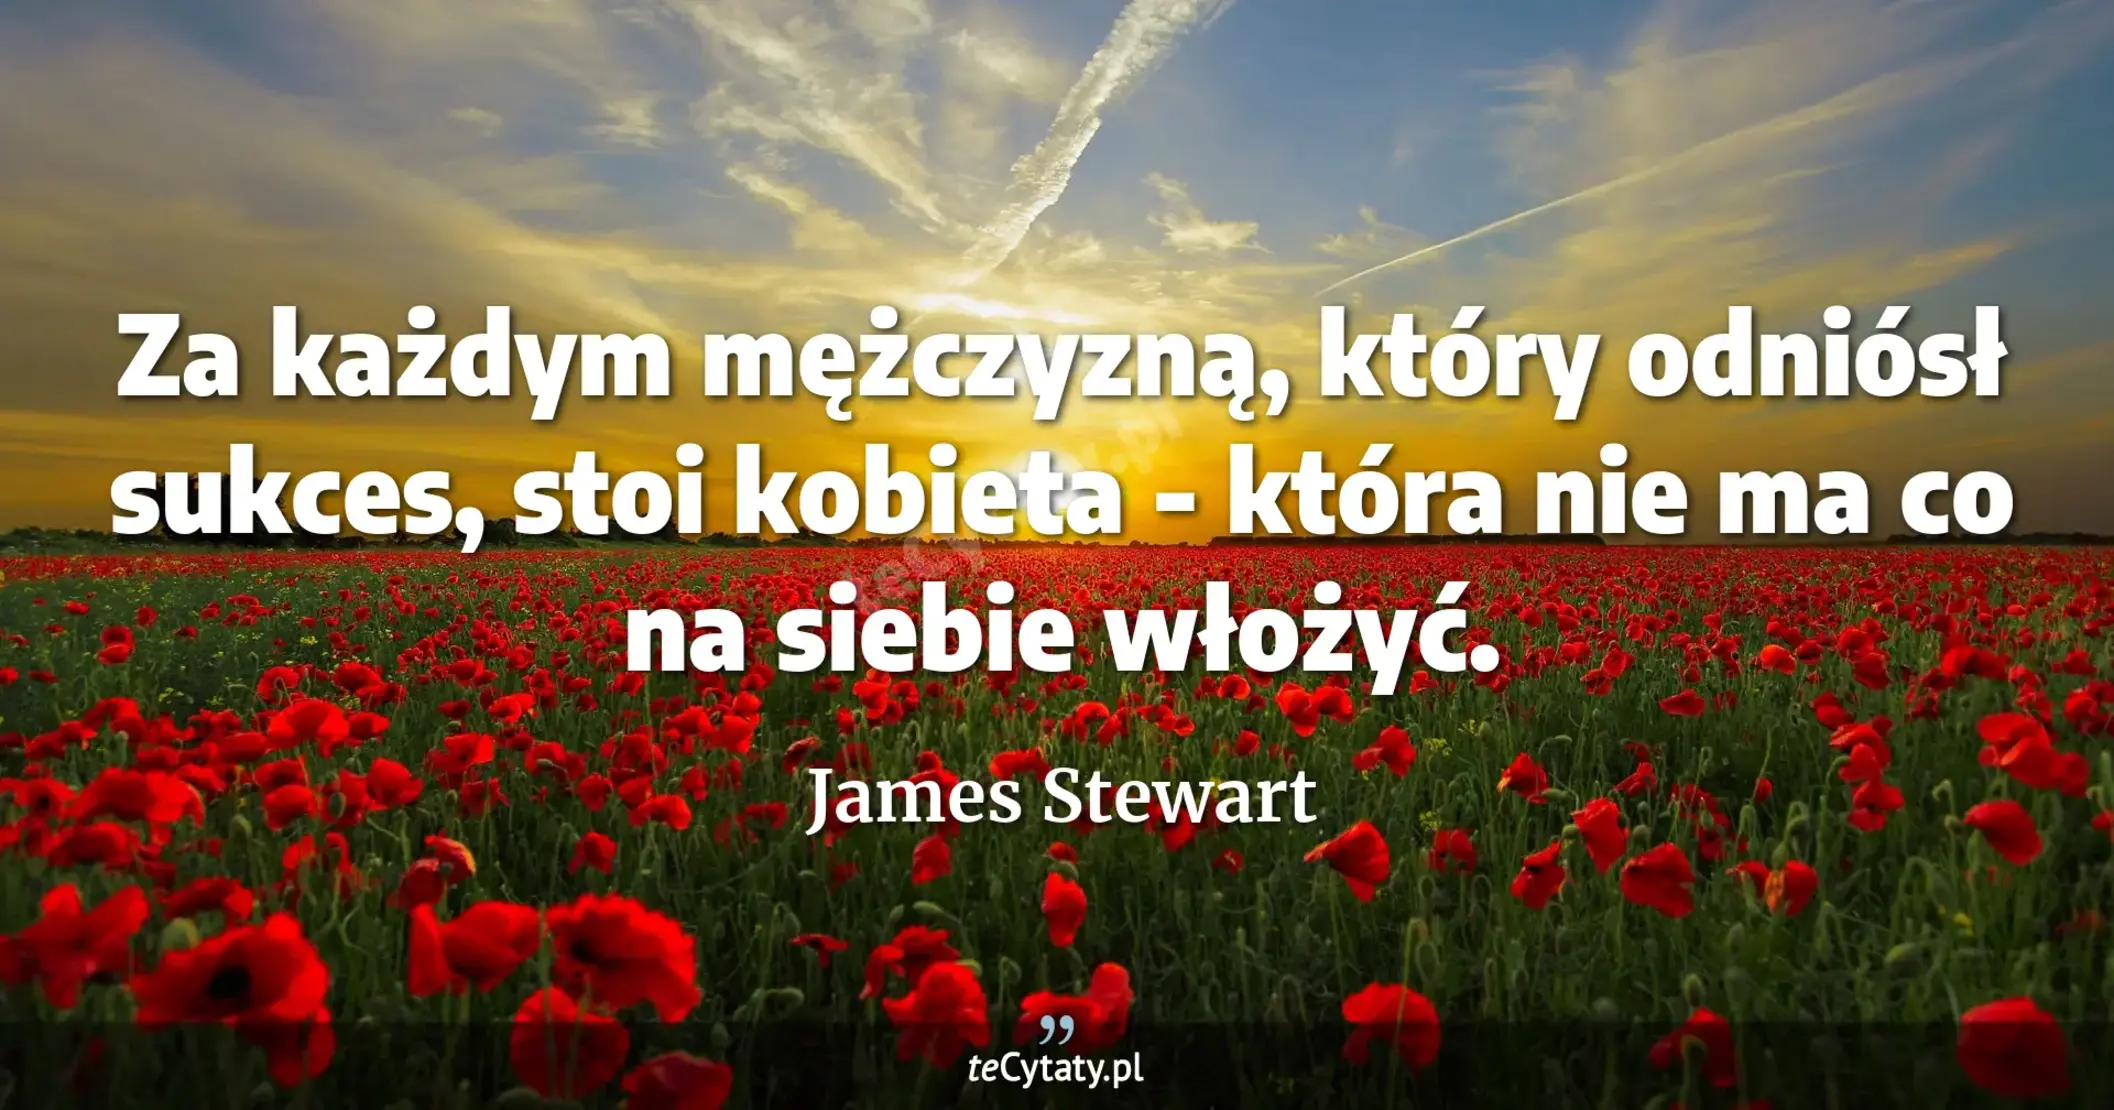 Za każdym mężczyzną, który odniósł sukces, stoi kobieta - która nie ma co na siebie włożyć. - James Stewart